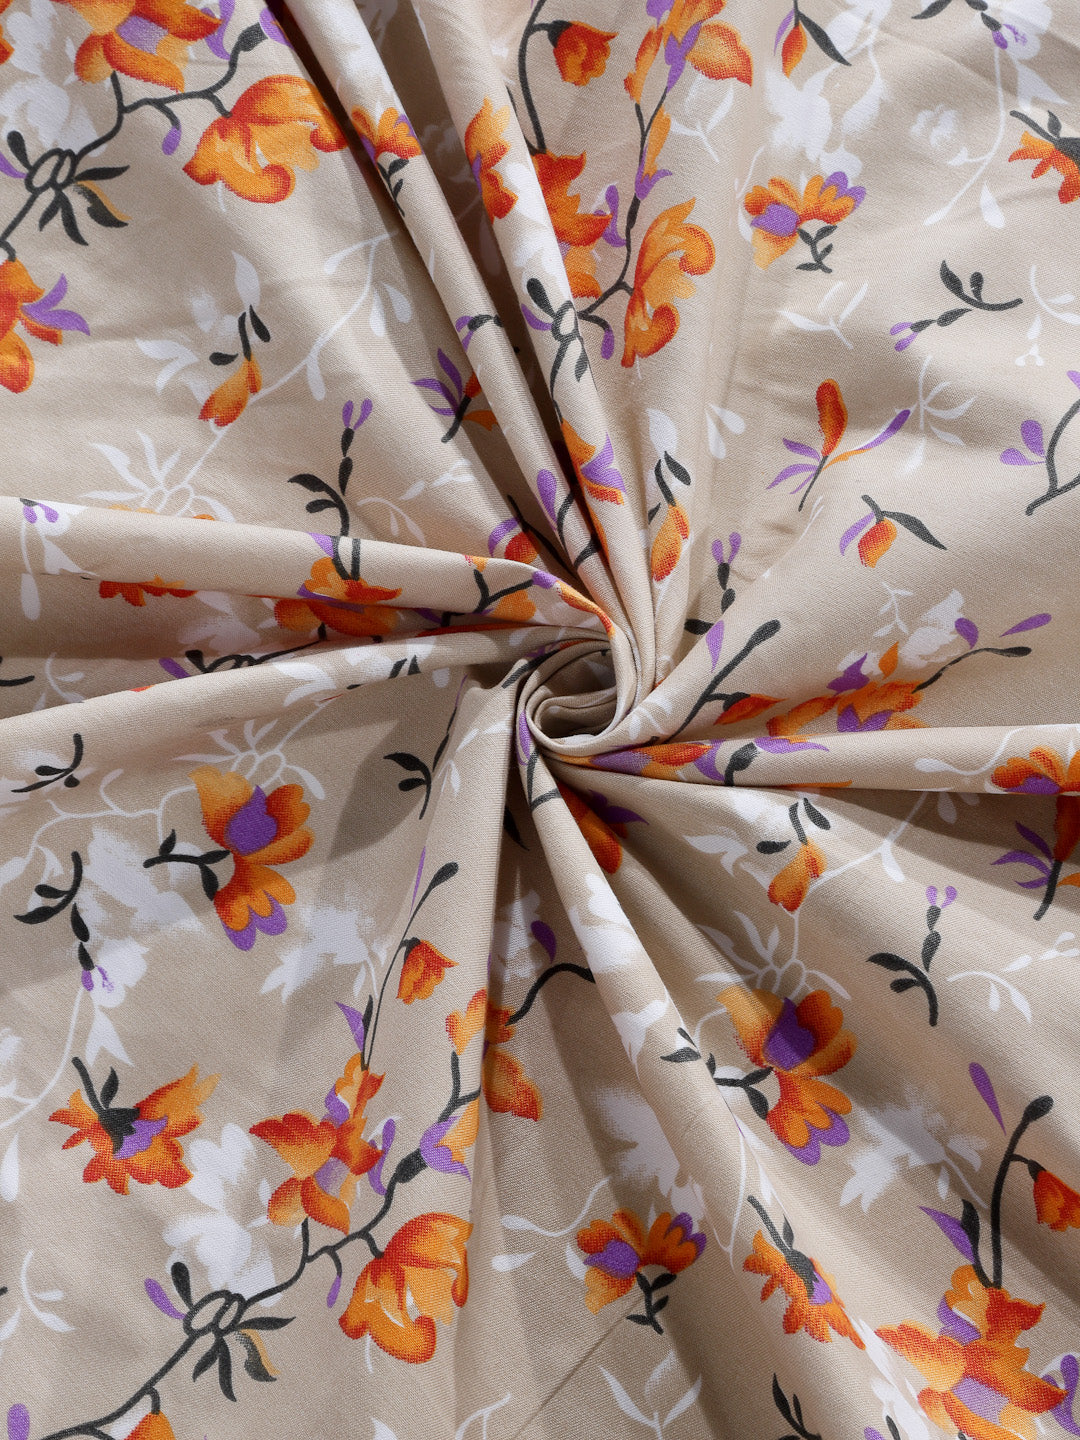 Arrabi Beige Floral TC Cotton Blend Double Size Bedsheet with 2 Pillow Covers (250 x 220 cm)